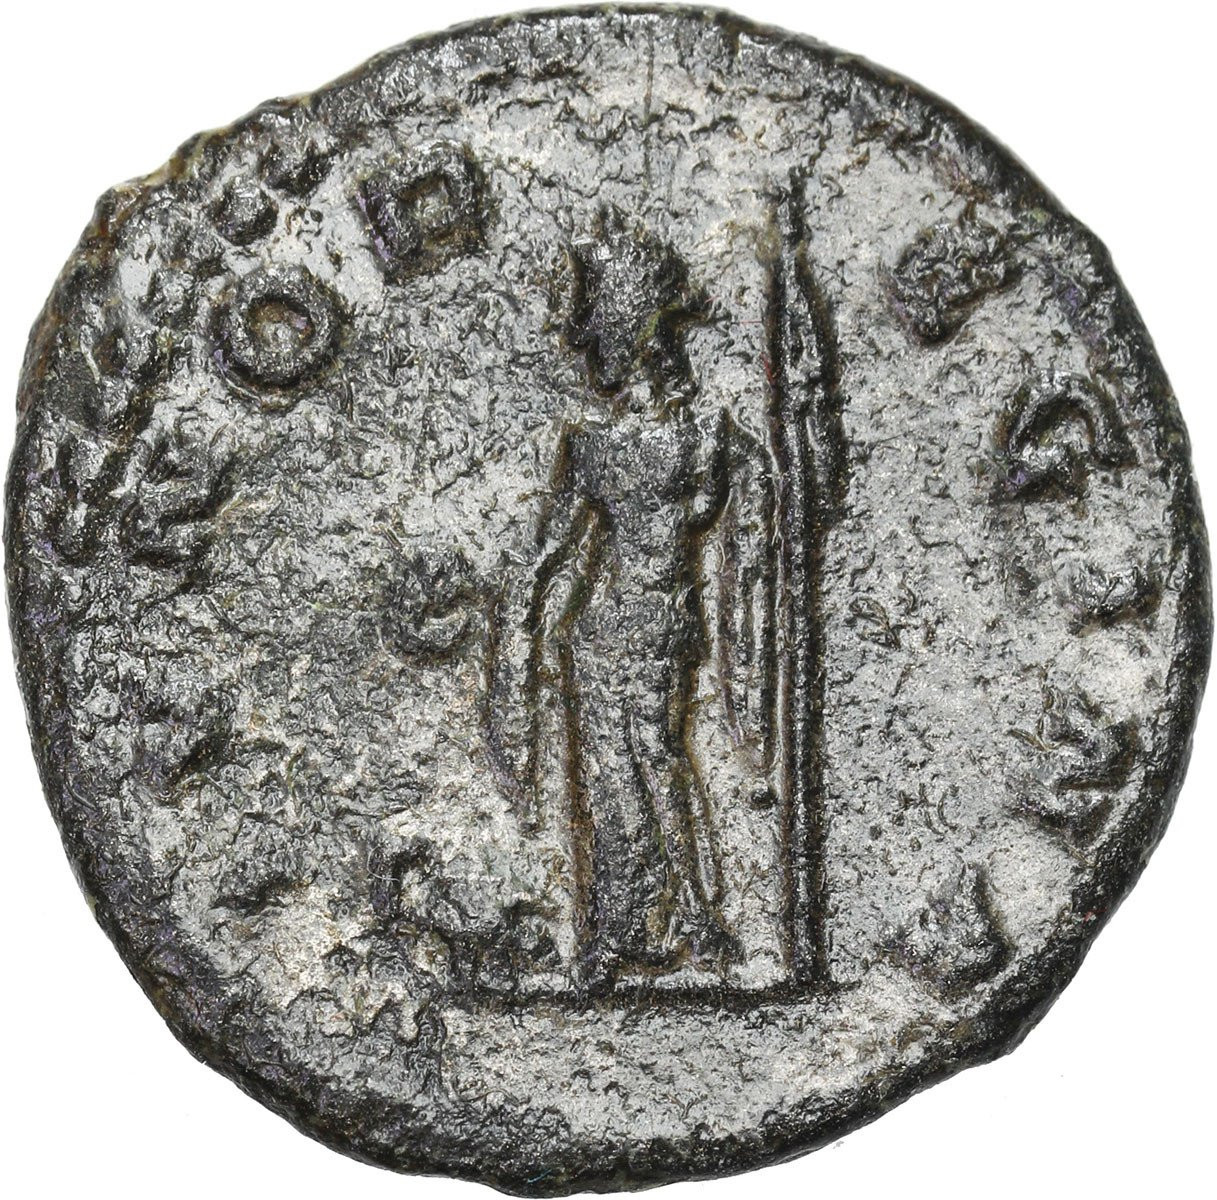 Cesarstwo Rzymskie, Antoninian Bilonowy, Klaudiusz II Gocki 268 - 270 n.e., Antiochia